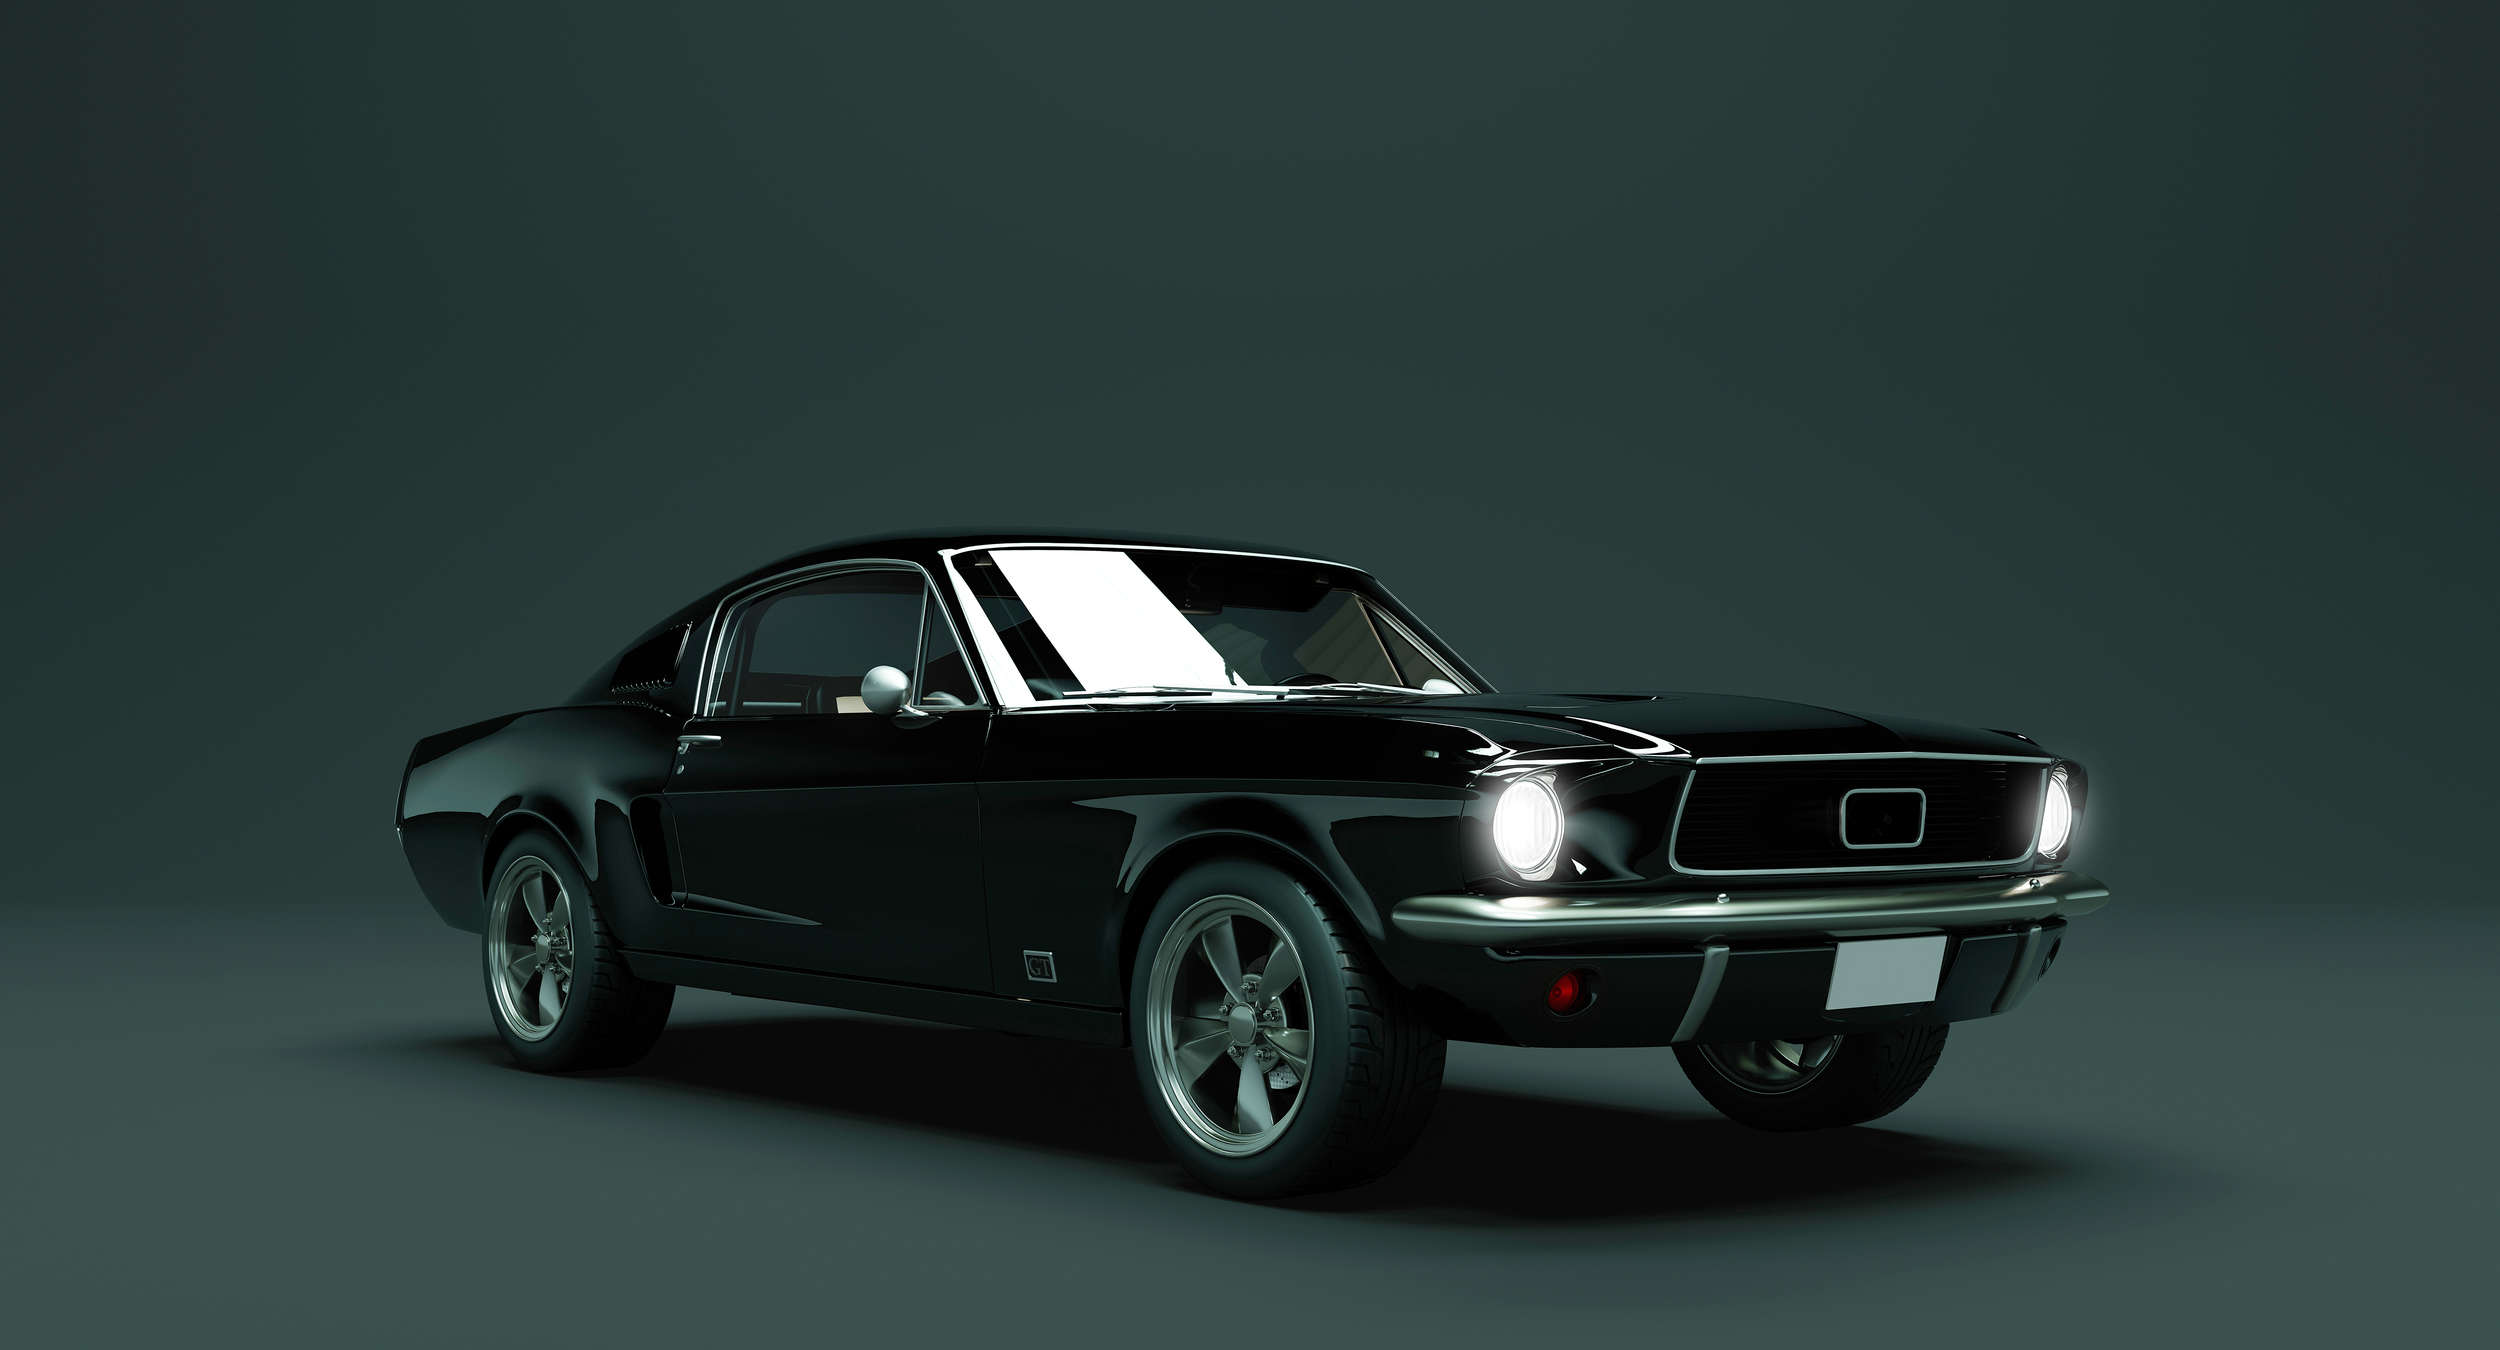             Mustang 2 - Fototapete, Mustang 1968 Vintage Car – Blau, Schwarz | Struktur Vlies
        